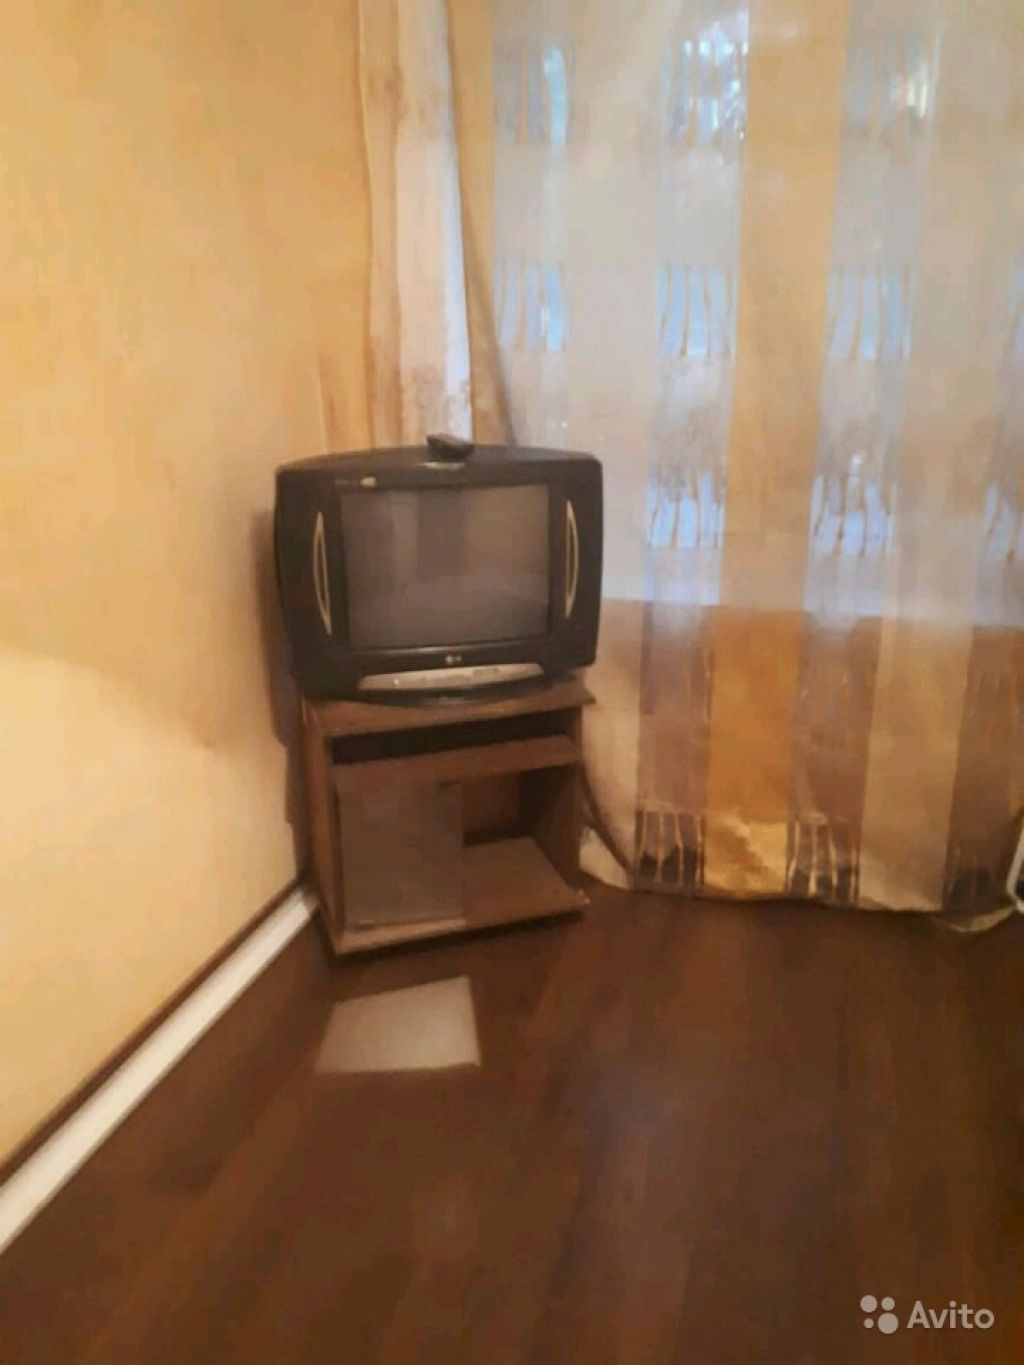 Сдам комнату Комната 12 м² в 2-к квартире на 2 этаже 5-этажного кирпичного дома в Москве. Фото 1